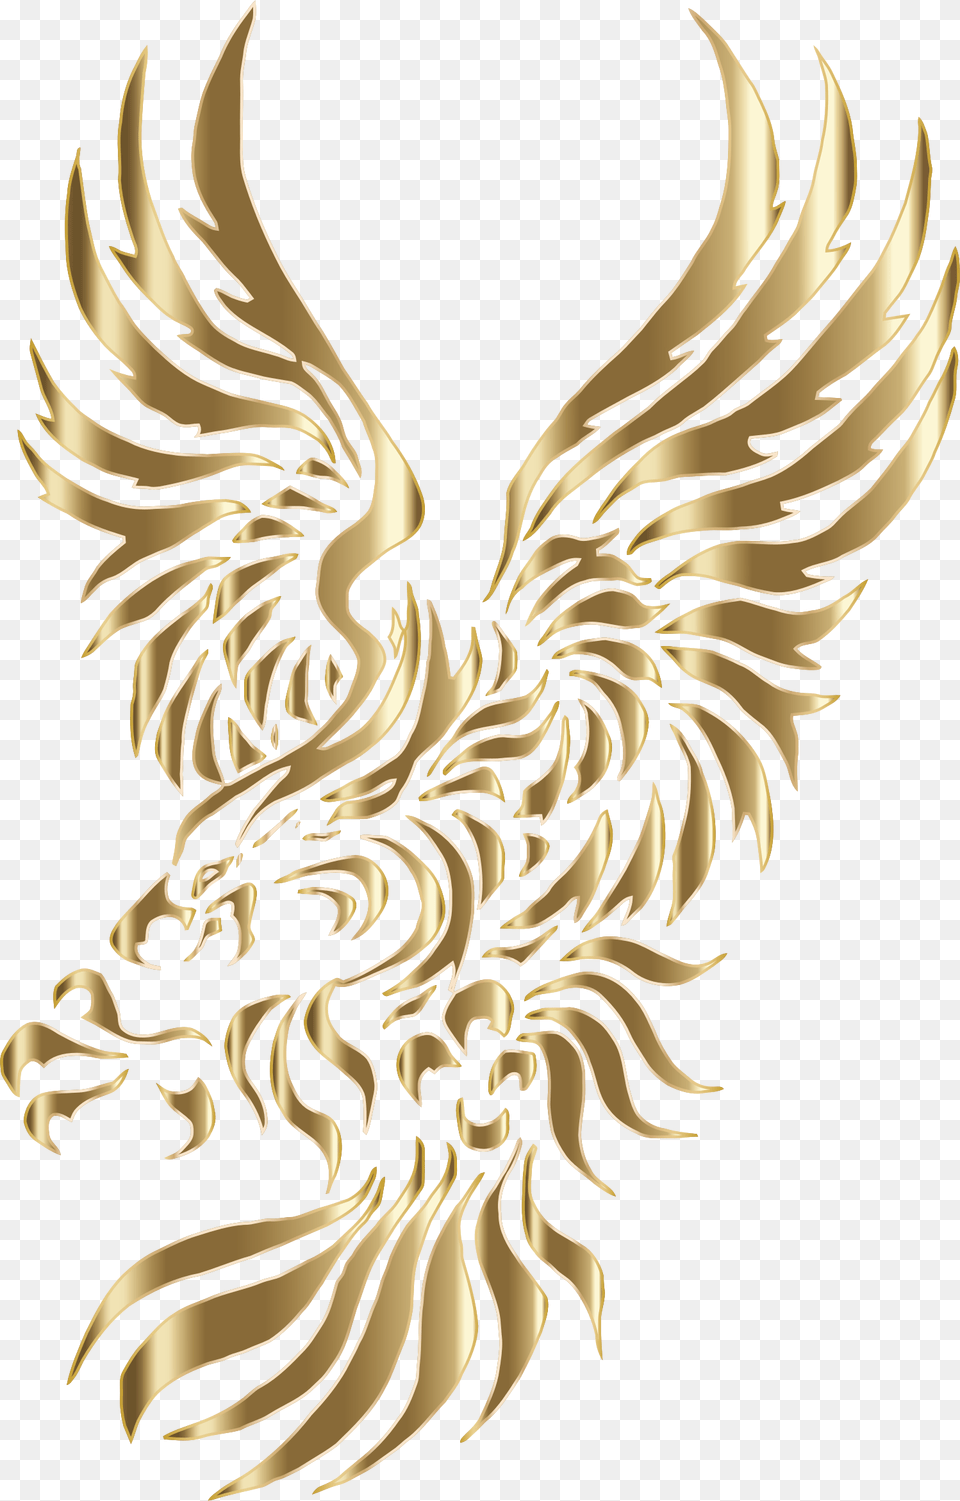 Bald Eagle Tribal Tattoo, Emblem, Symbol, Person Free Transparent Png